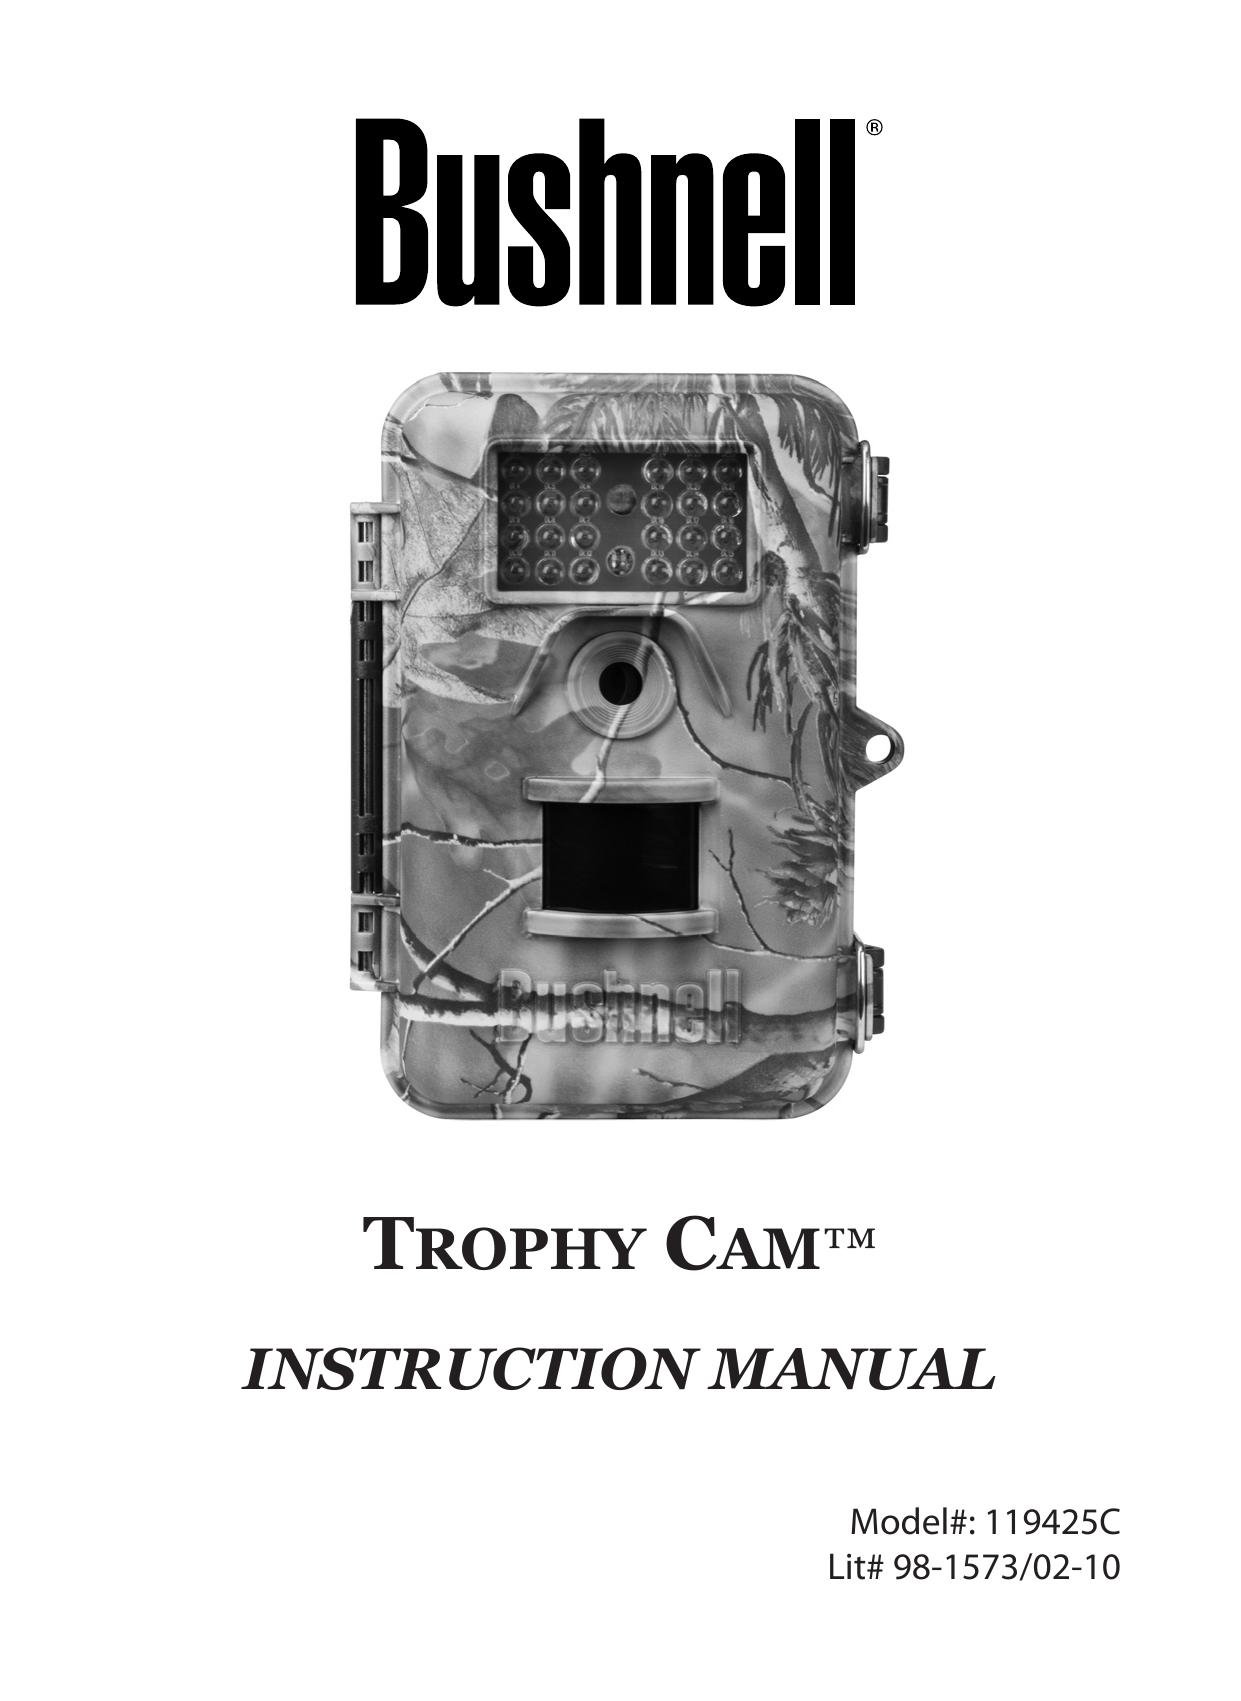 Bushnell 119425C Digital Camera User Manual